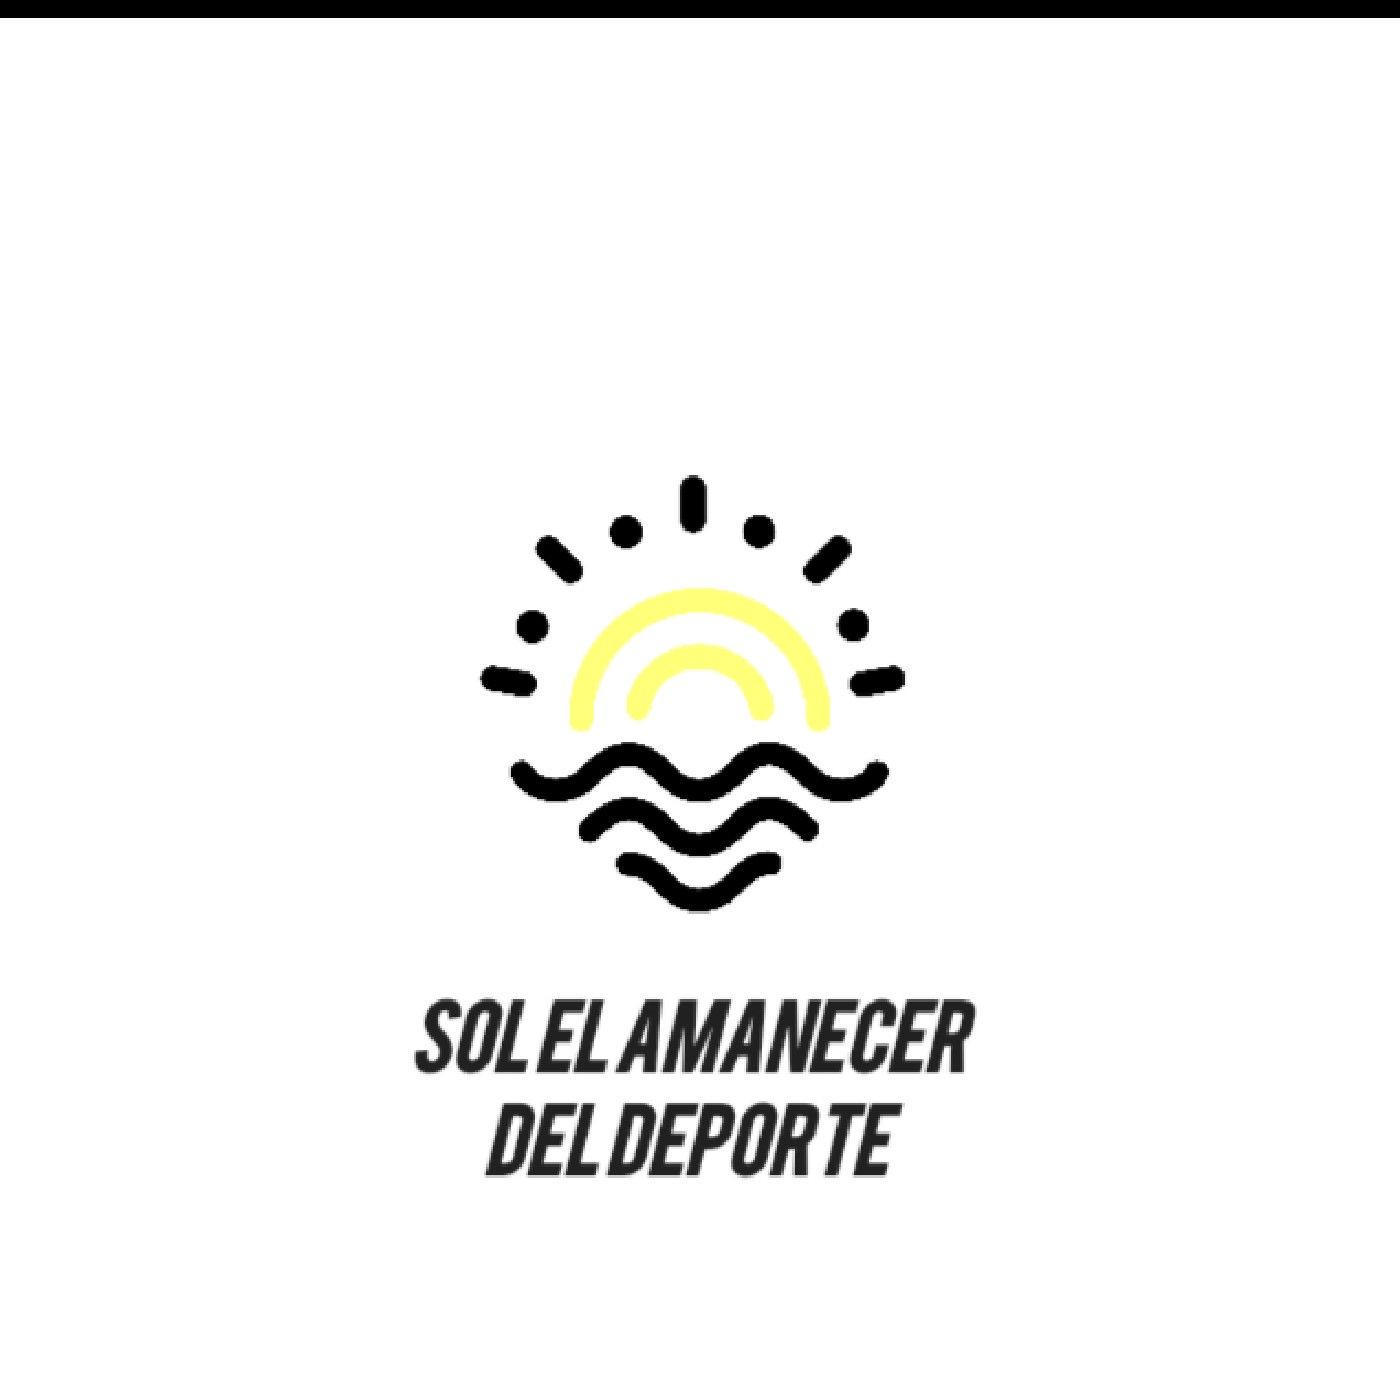 El show de Sol El Amanecer Del Deporte